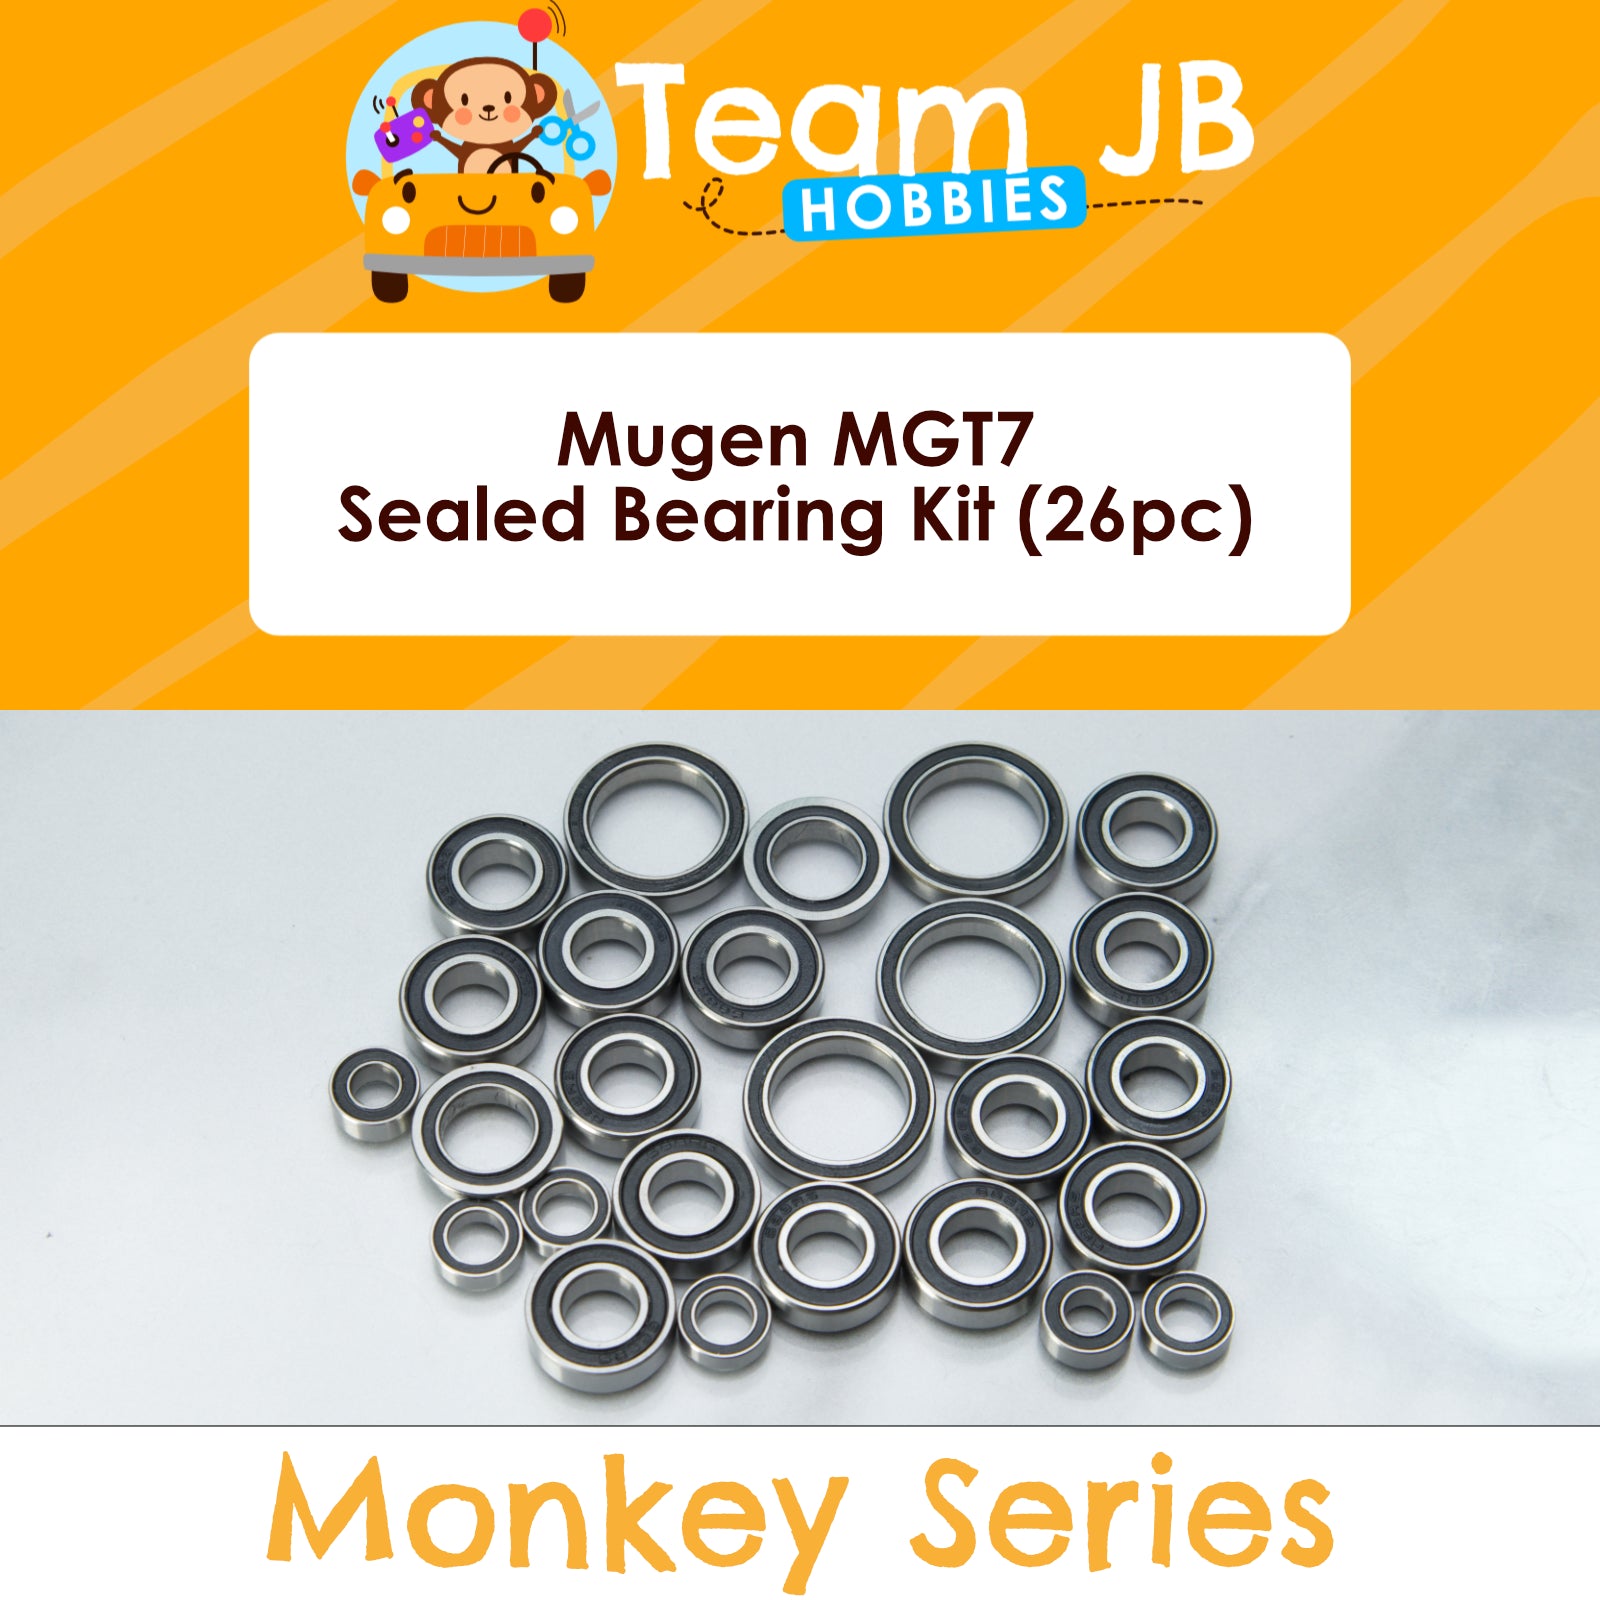 Mugen MGT7 - Sealed Bearing Kit